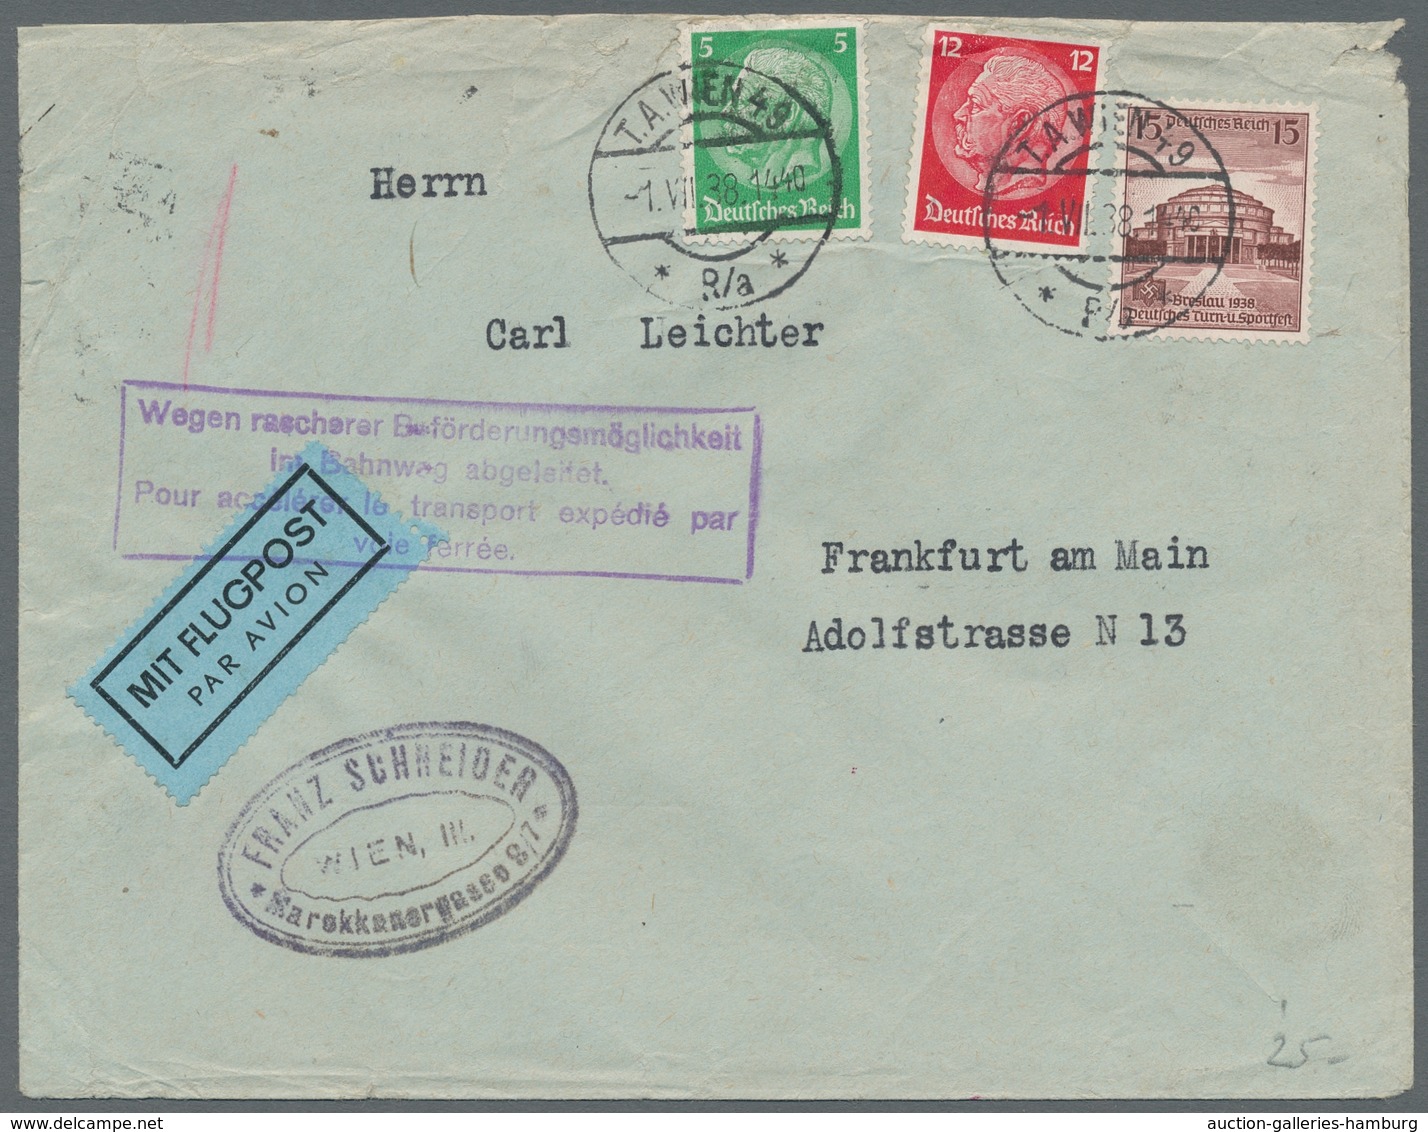 Zeppelinpost Deutschland: 1930-1938, Lot von 5 deutschen Flugpost-Belegen, mit dabei 1 Zeppelin-Eins